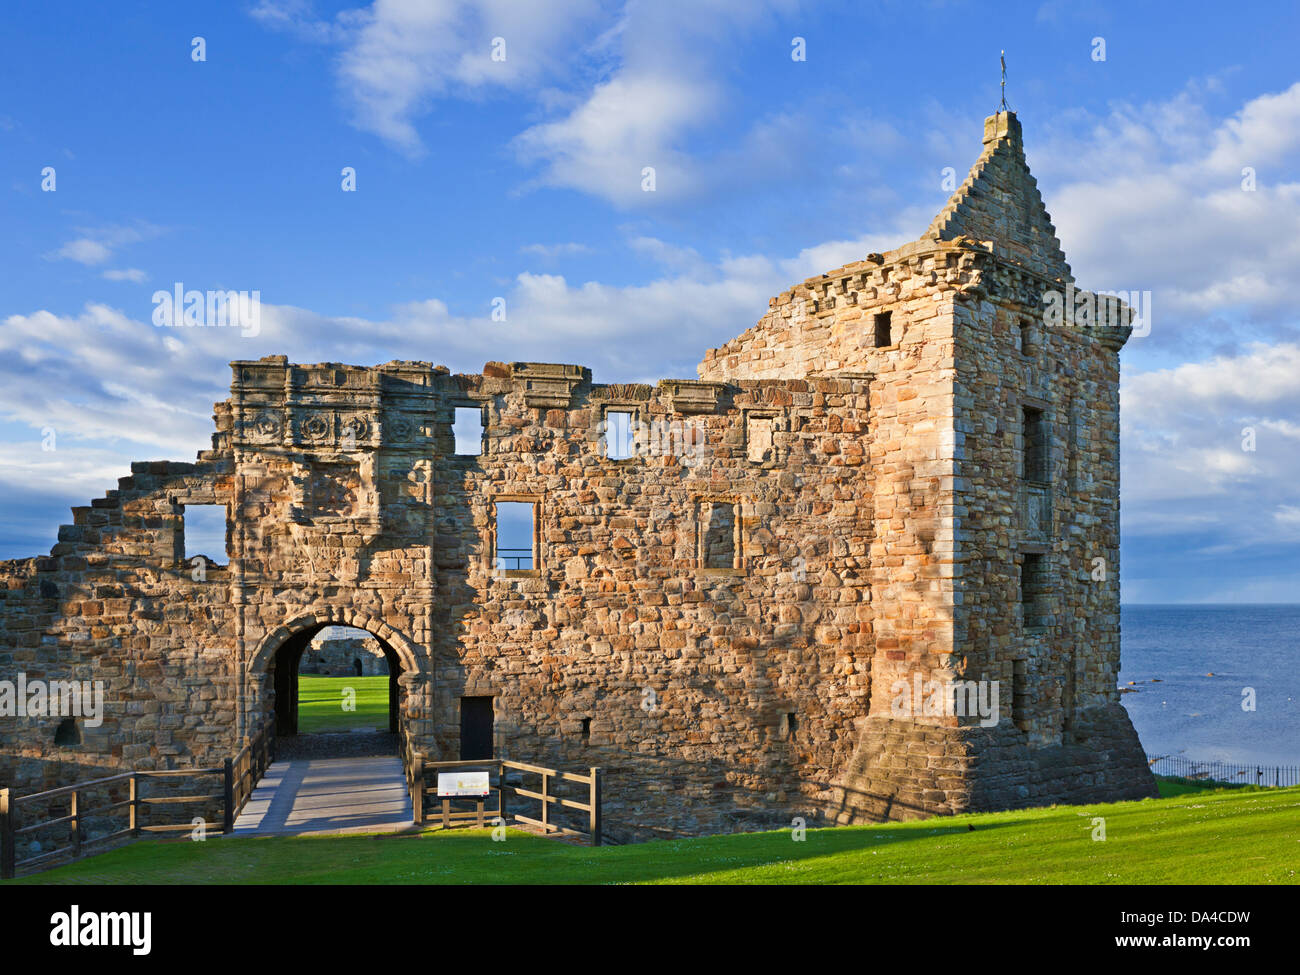 Castello di St Andrews una pittoresca rovina nella costa reale Burgh of St Andrews Fife Scotland UK GB Europe Foto Stock